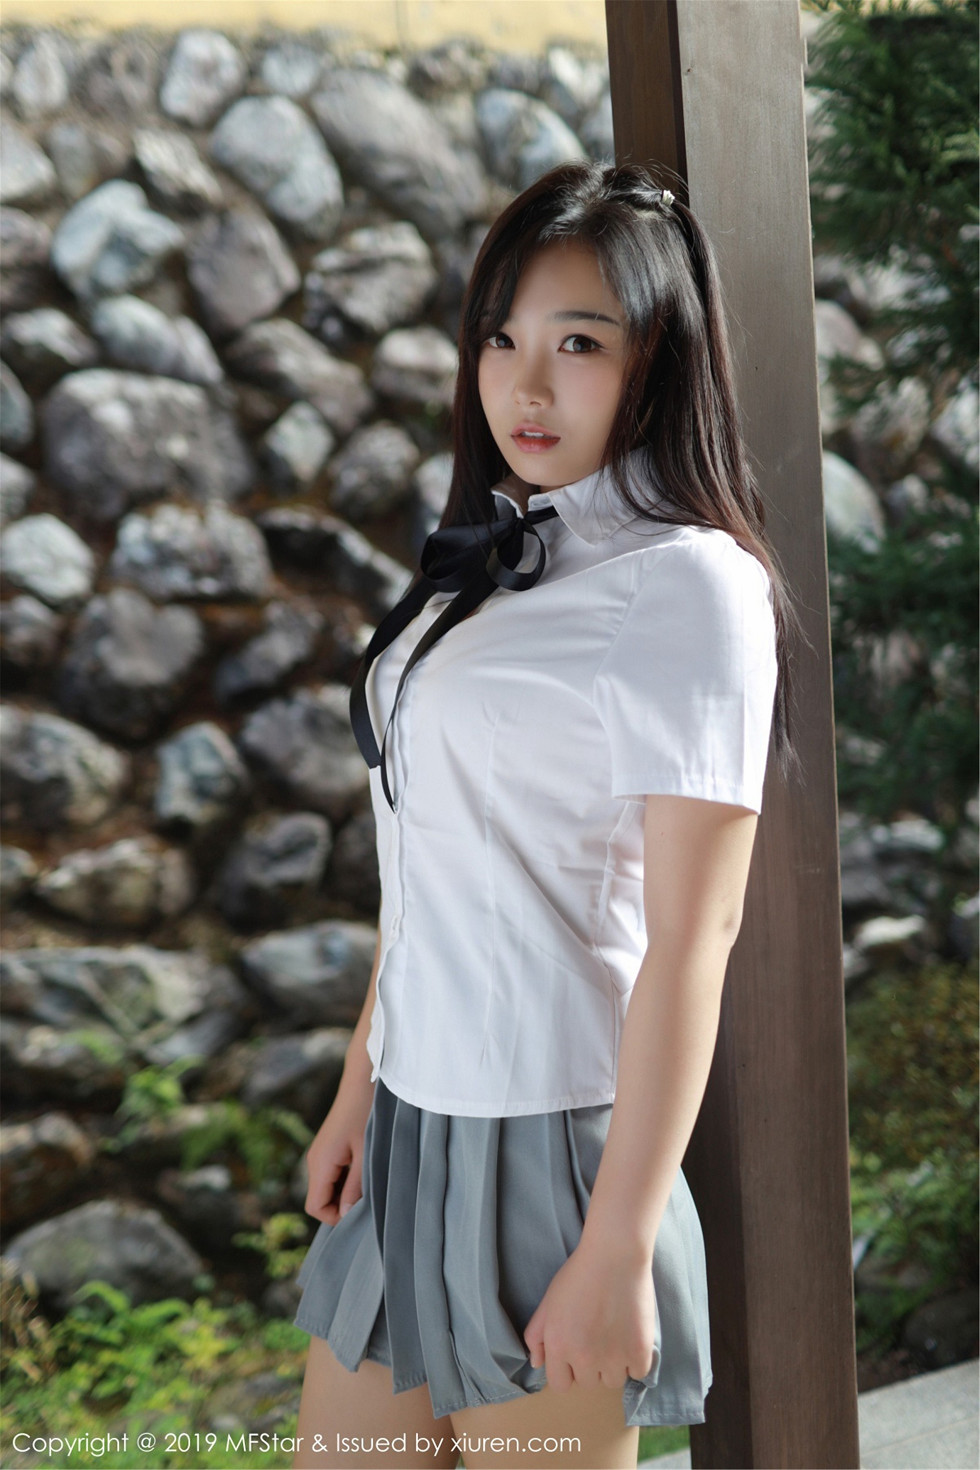 女神徐微微miar日本旅拍戶外學生JK制服清爽迷人寫真 - 貼圖 - 清涼寫真 -